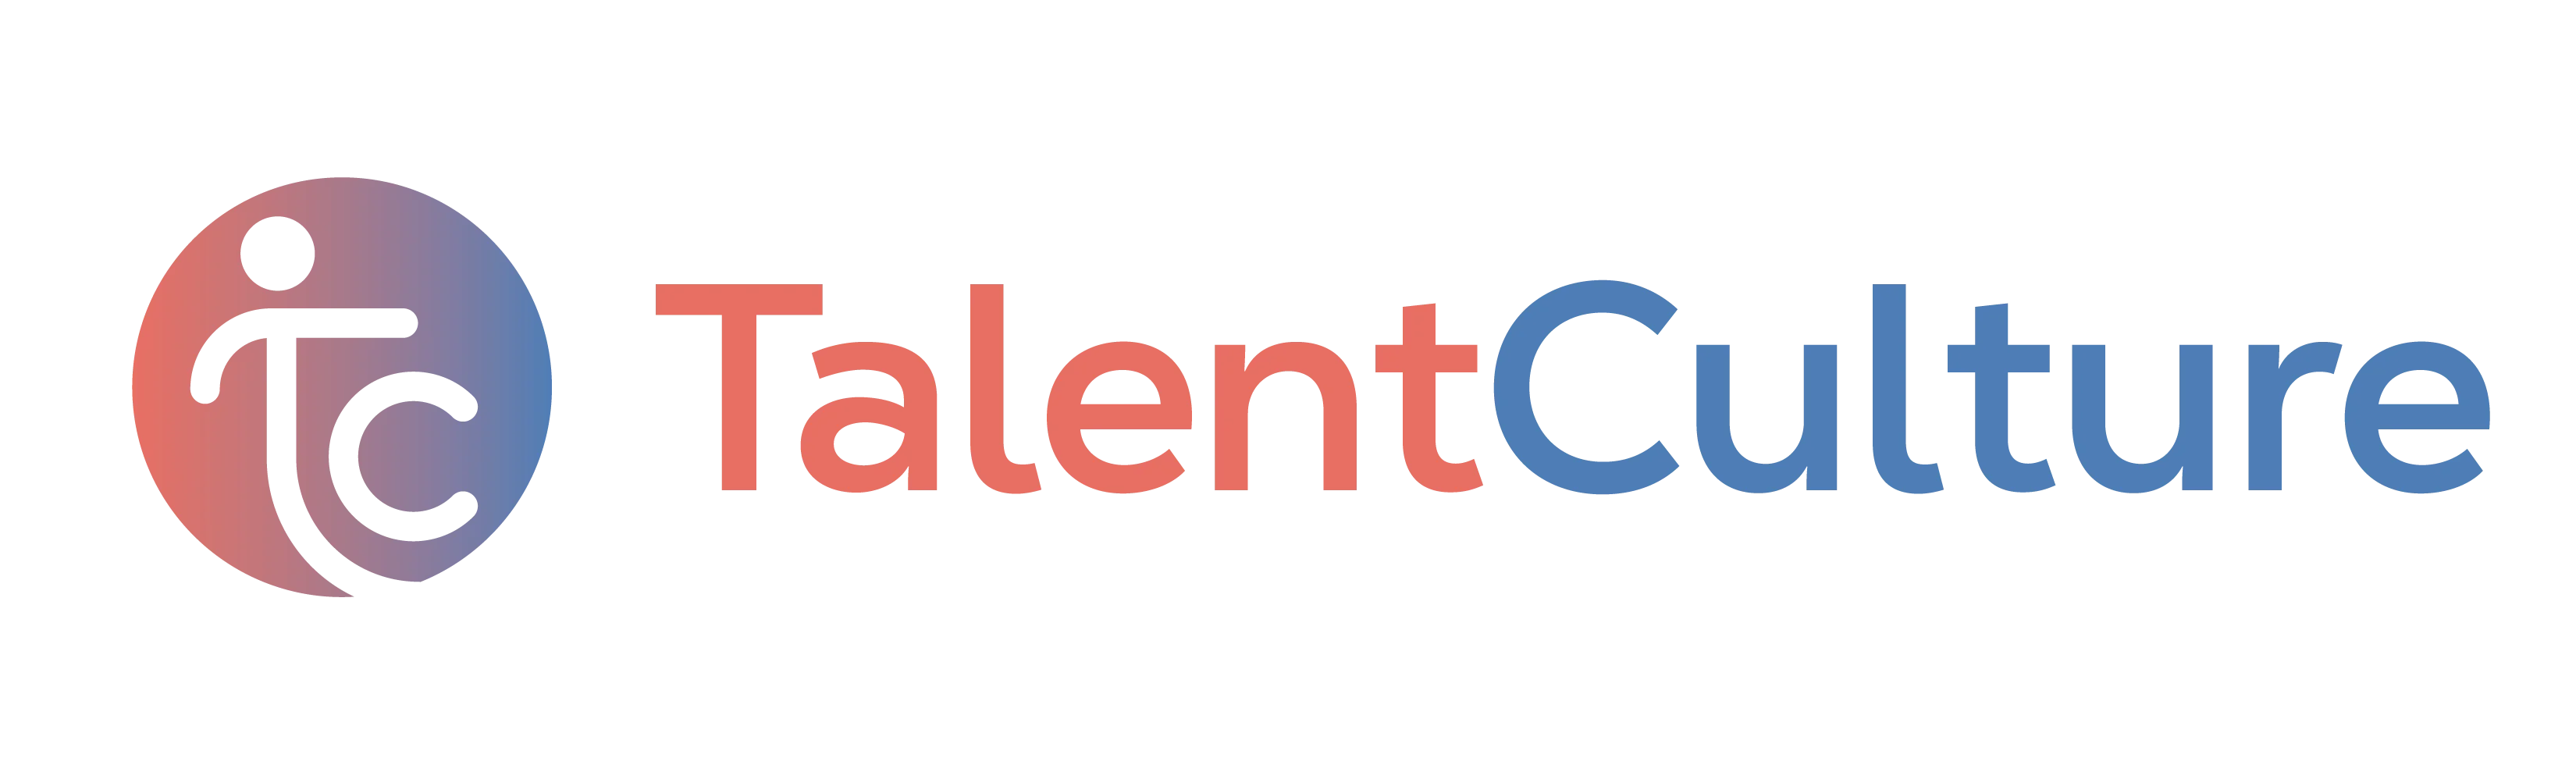 Talent Culture logo